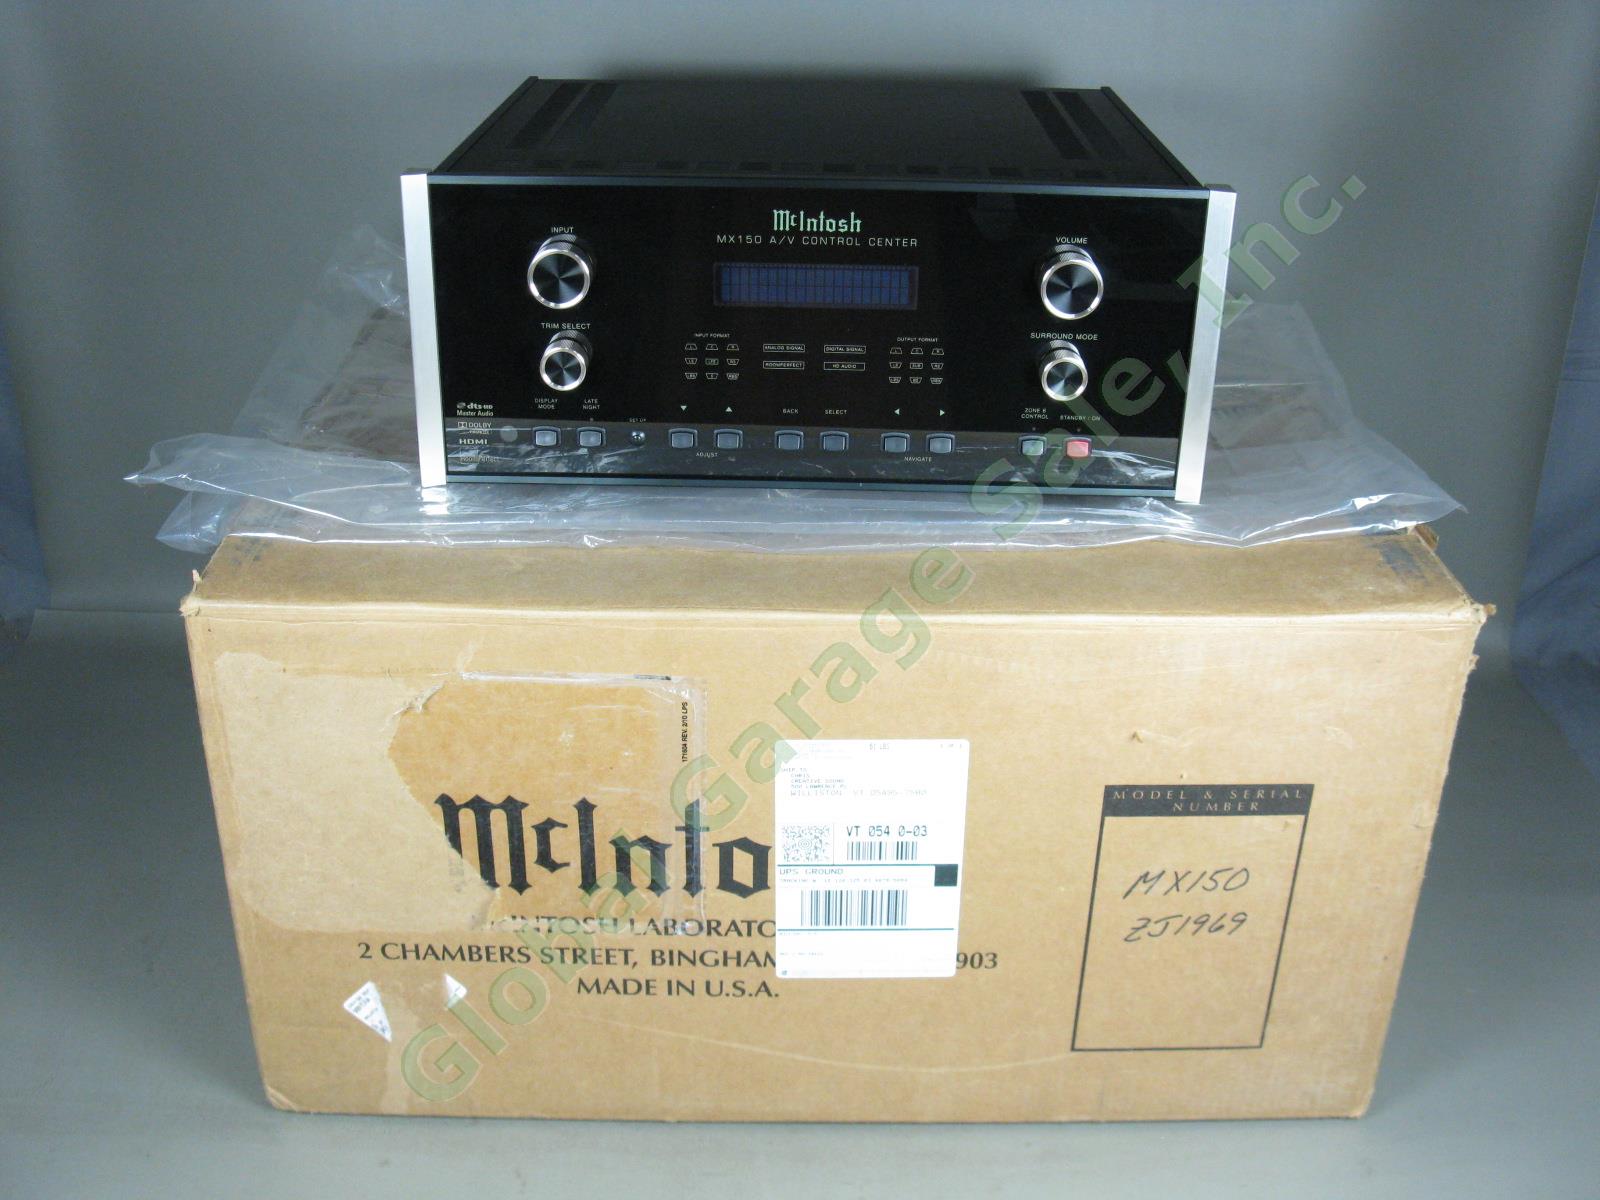 McIntosh MX150 7.1 A/V Home Theater Control Center Mint Condition! Original Box!